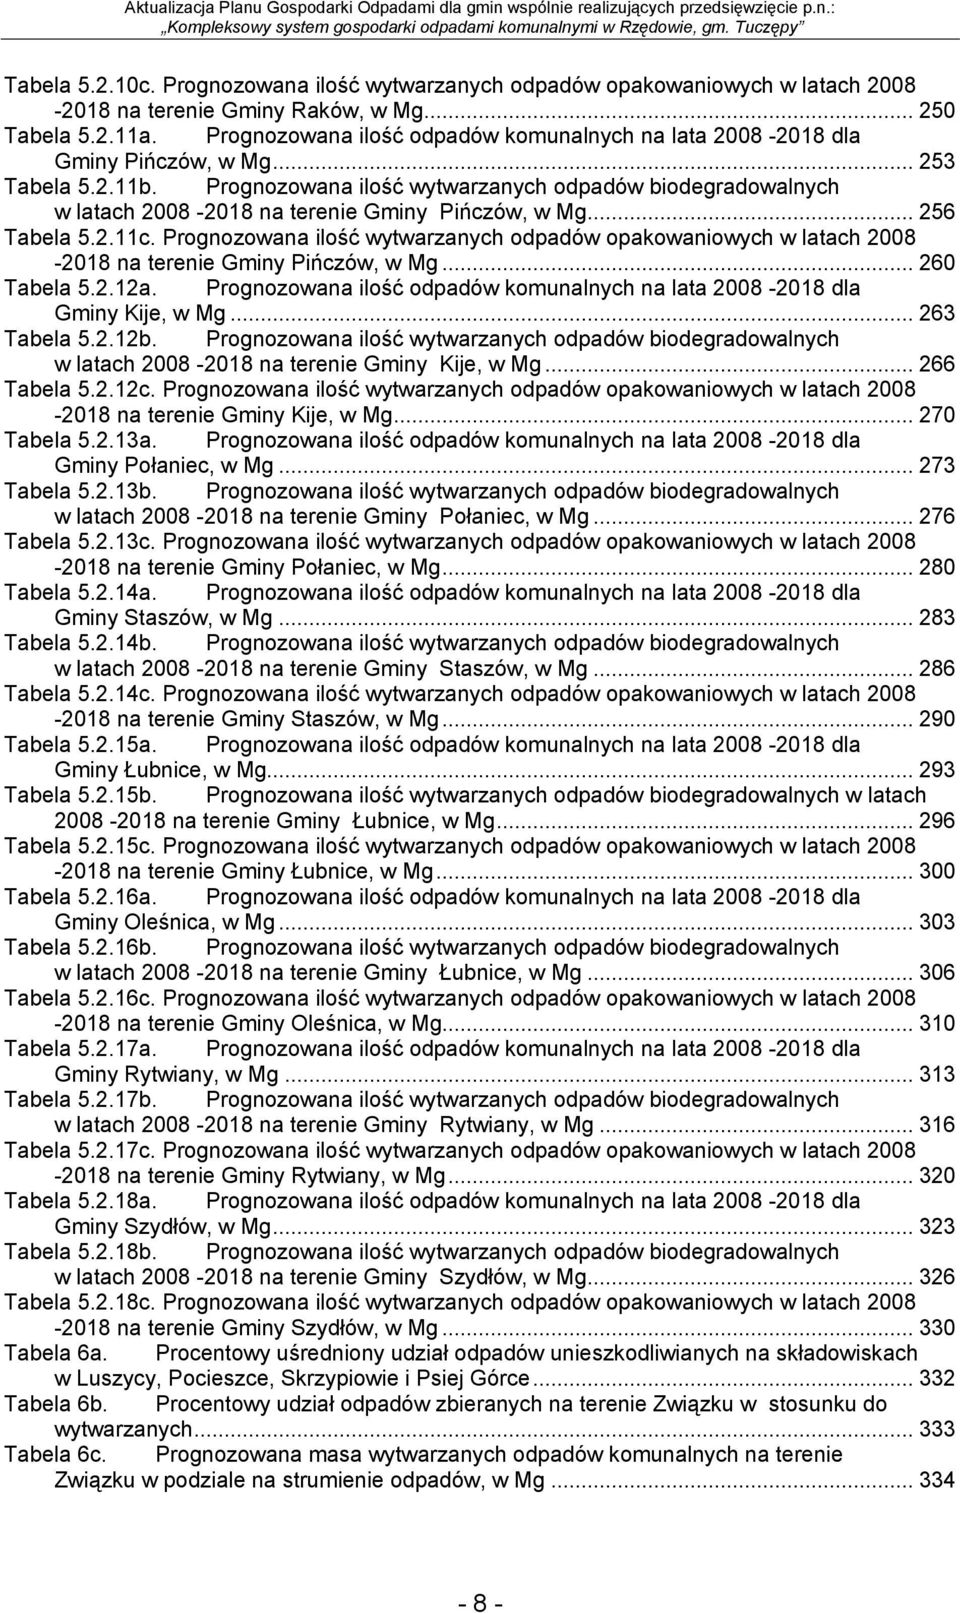 Prognozowana ilość wytwarzanych odpadów biodegradowalnych w latach 2008-2018 na terenie Gminy Pińczów, w Mg... 256 Tabela 5.2.11c.